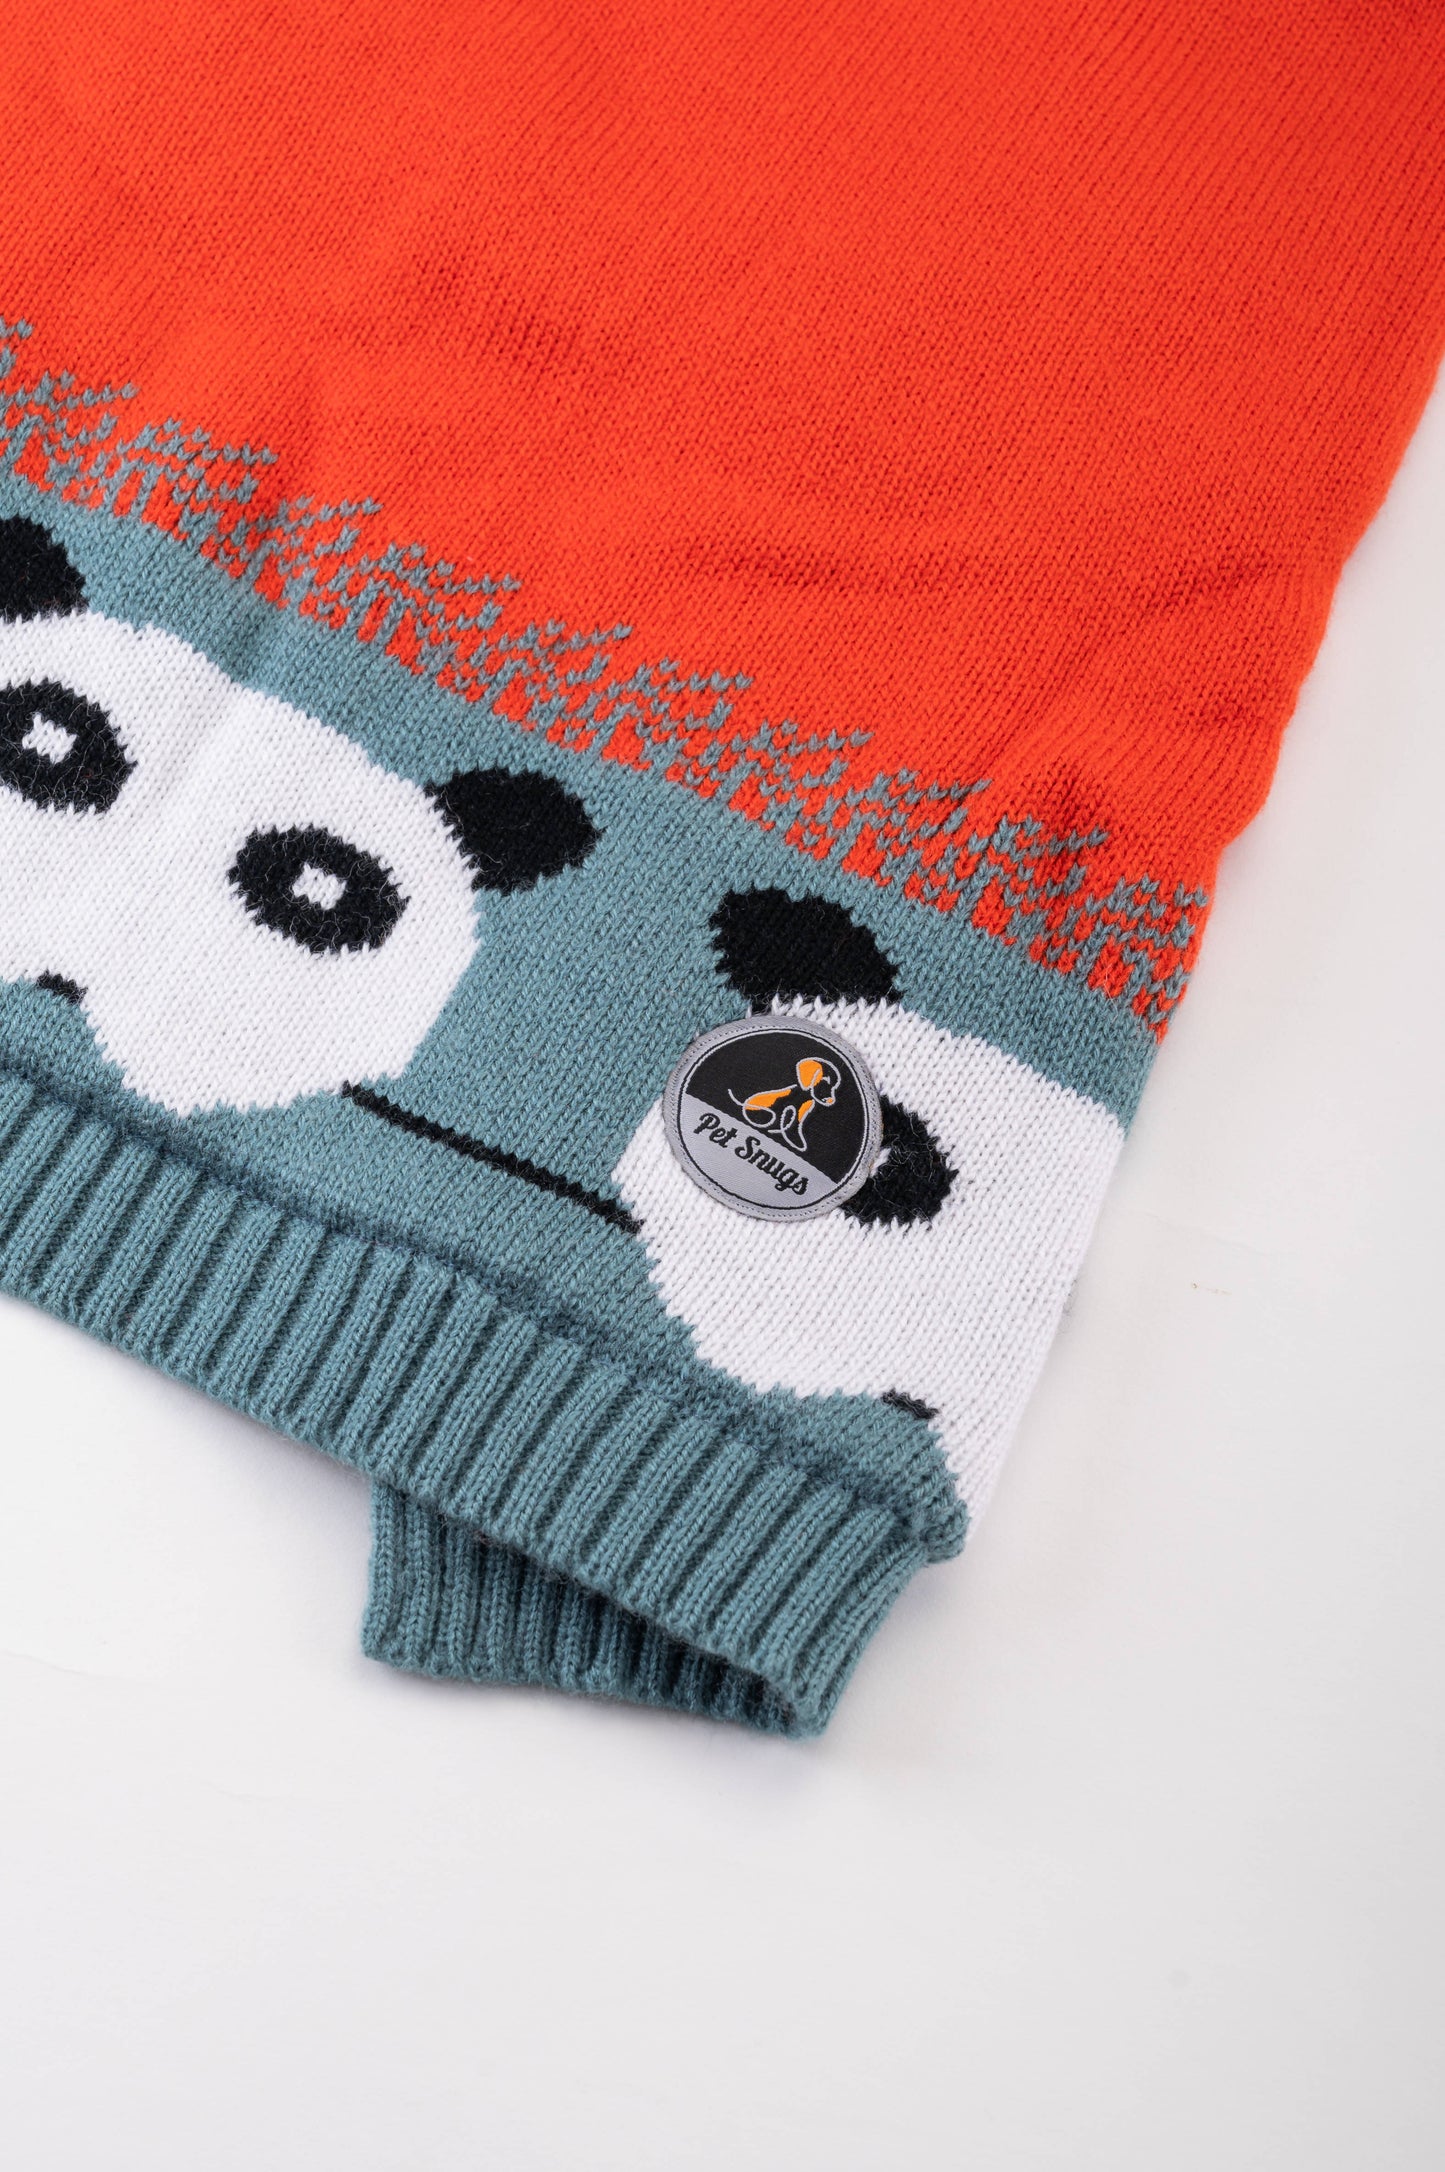 Petsnugs - Panda Knit Sweater